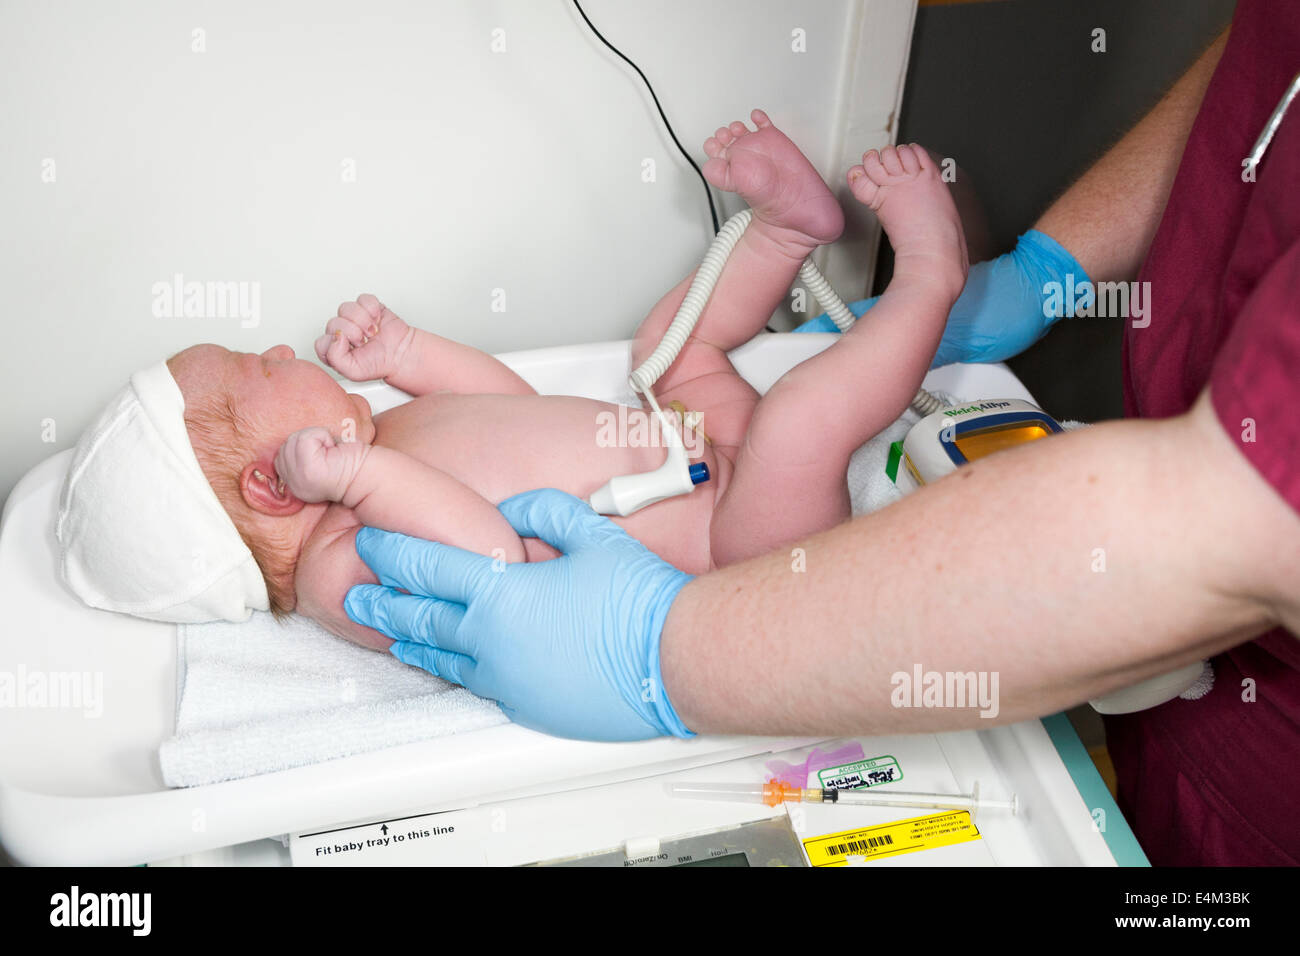 Les mains d' sage-femme effectuer un examen physique health check test test sur le nouveau-né / bébé nouveau-né après la naissance de l'être né / UK Banque D'Images